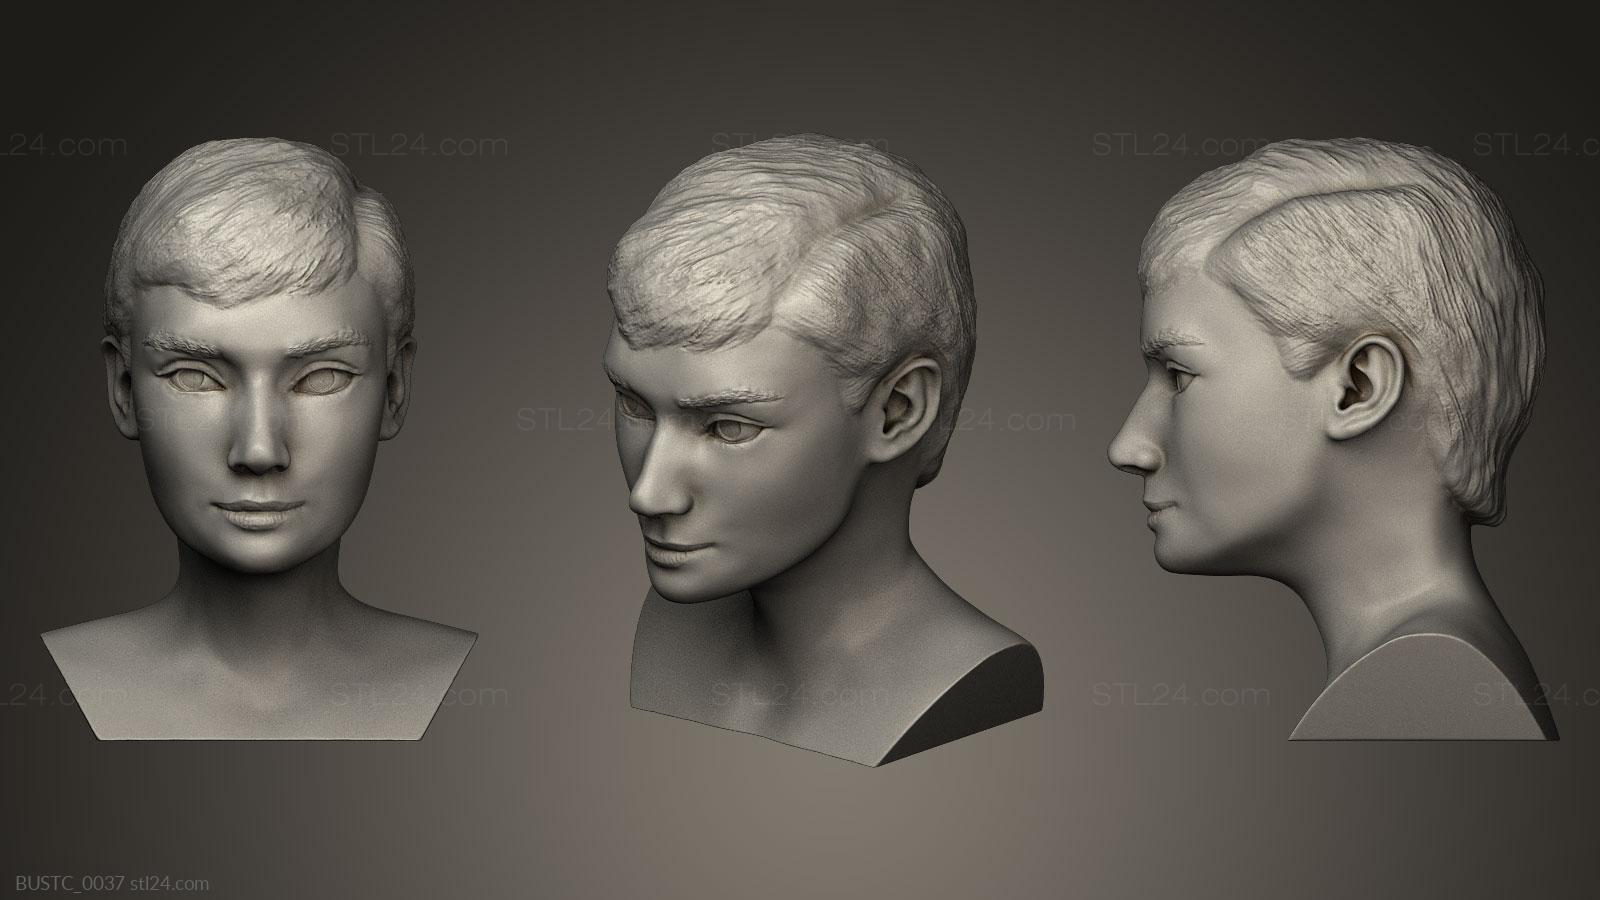 Бюсты и барельефы известных личностей (Одри Хепберн, BUSTC_0037) 3D модель для ЧПУ станка